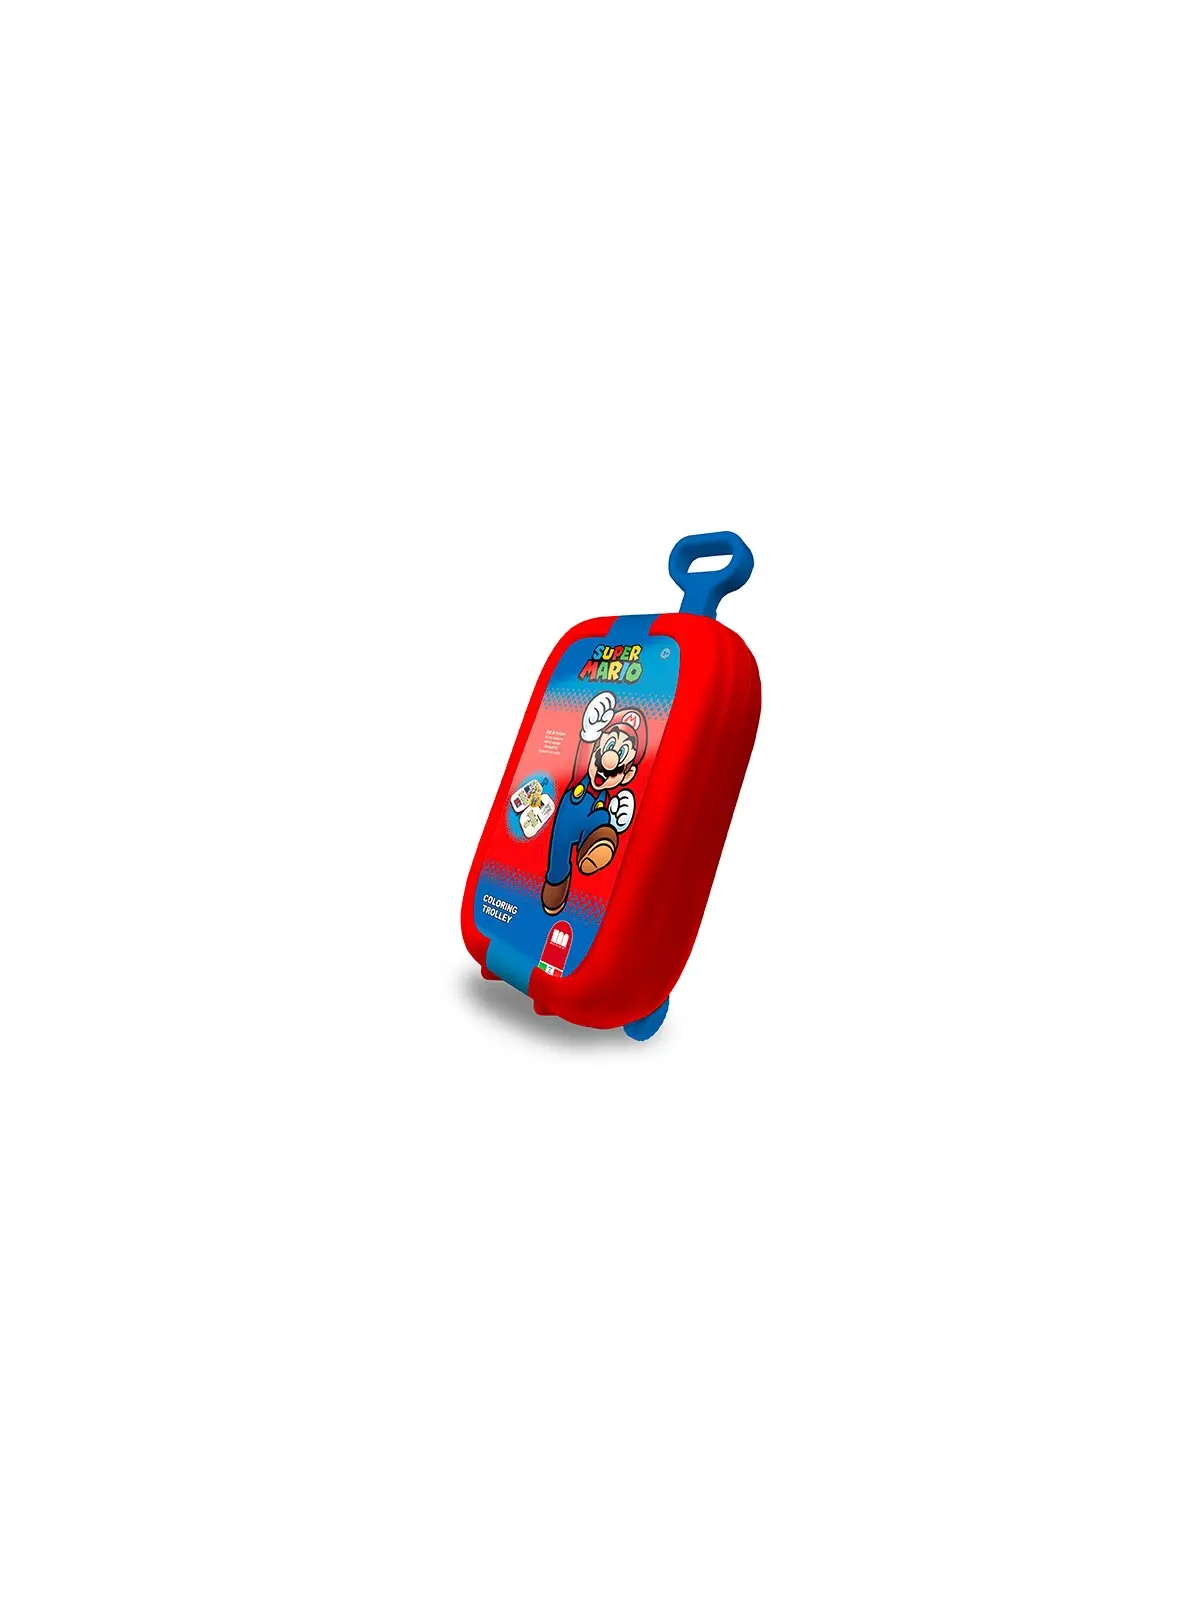 Super Mario Trolley Colori e Timbri